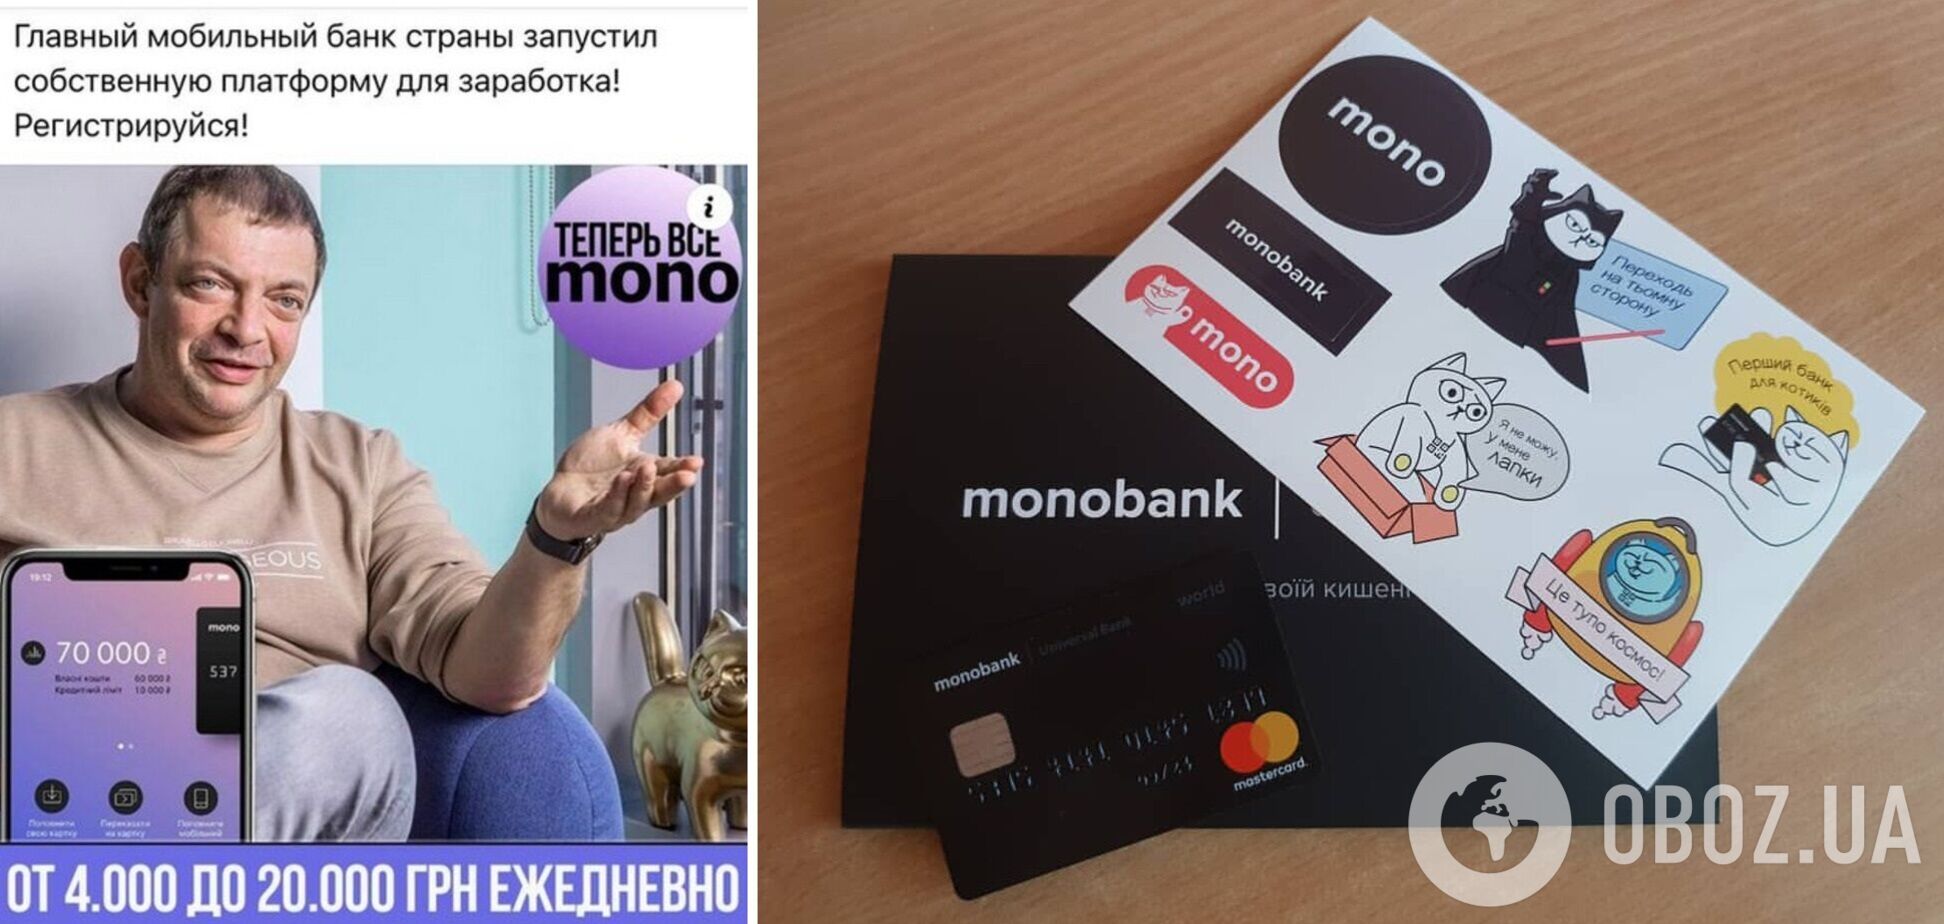 Monobank попередив про шахраїв